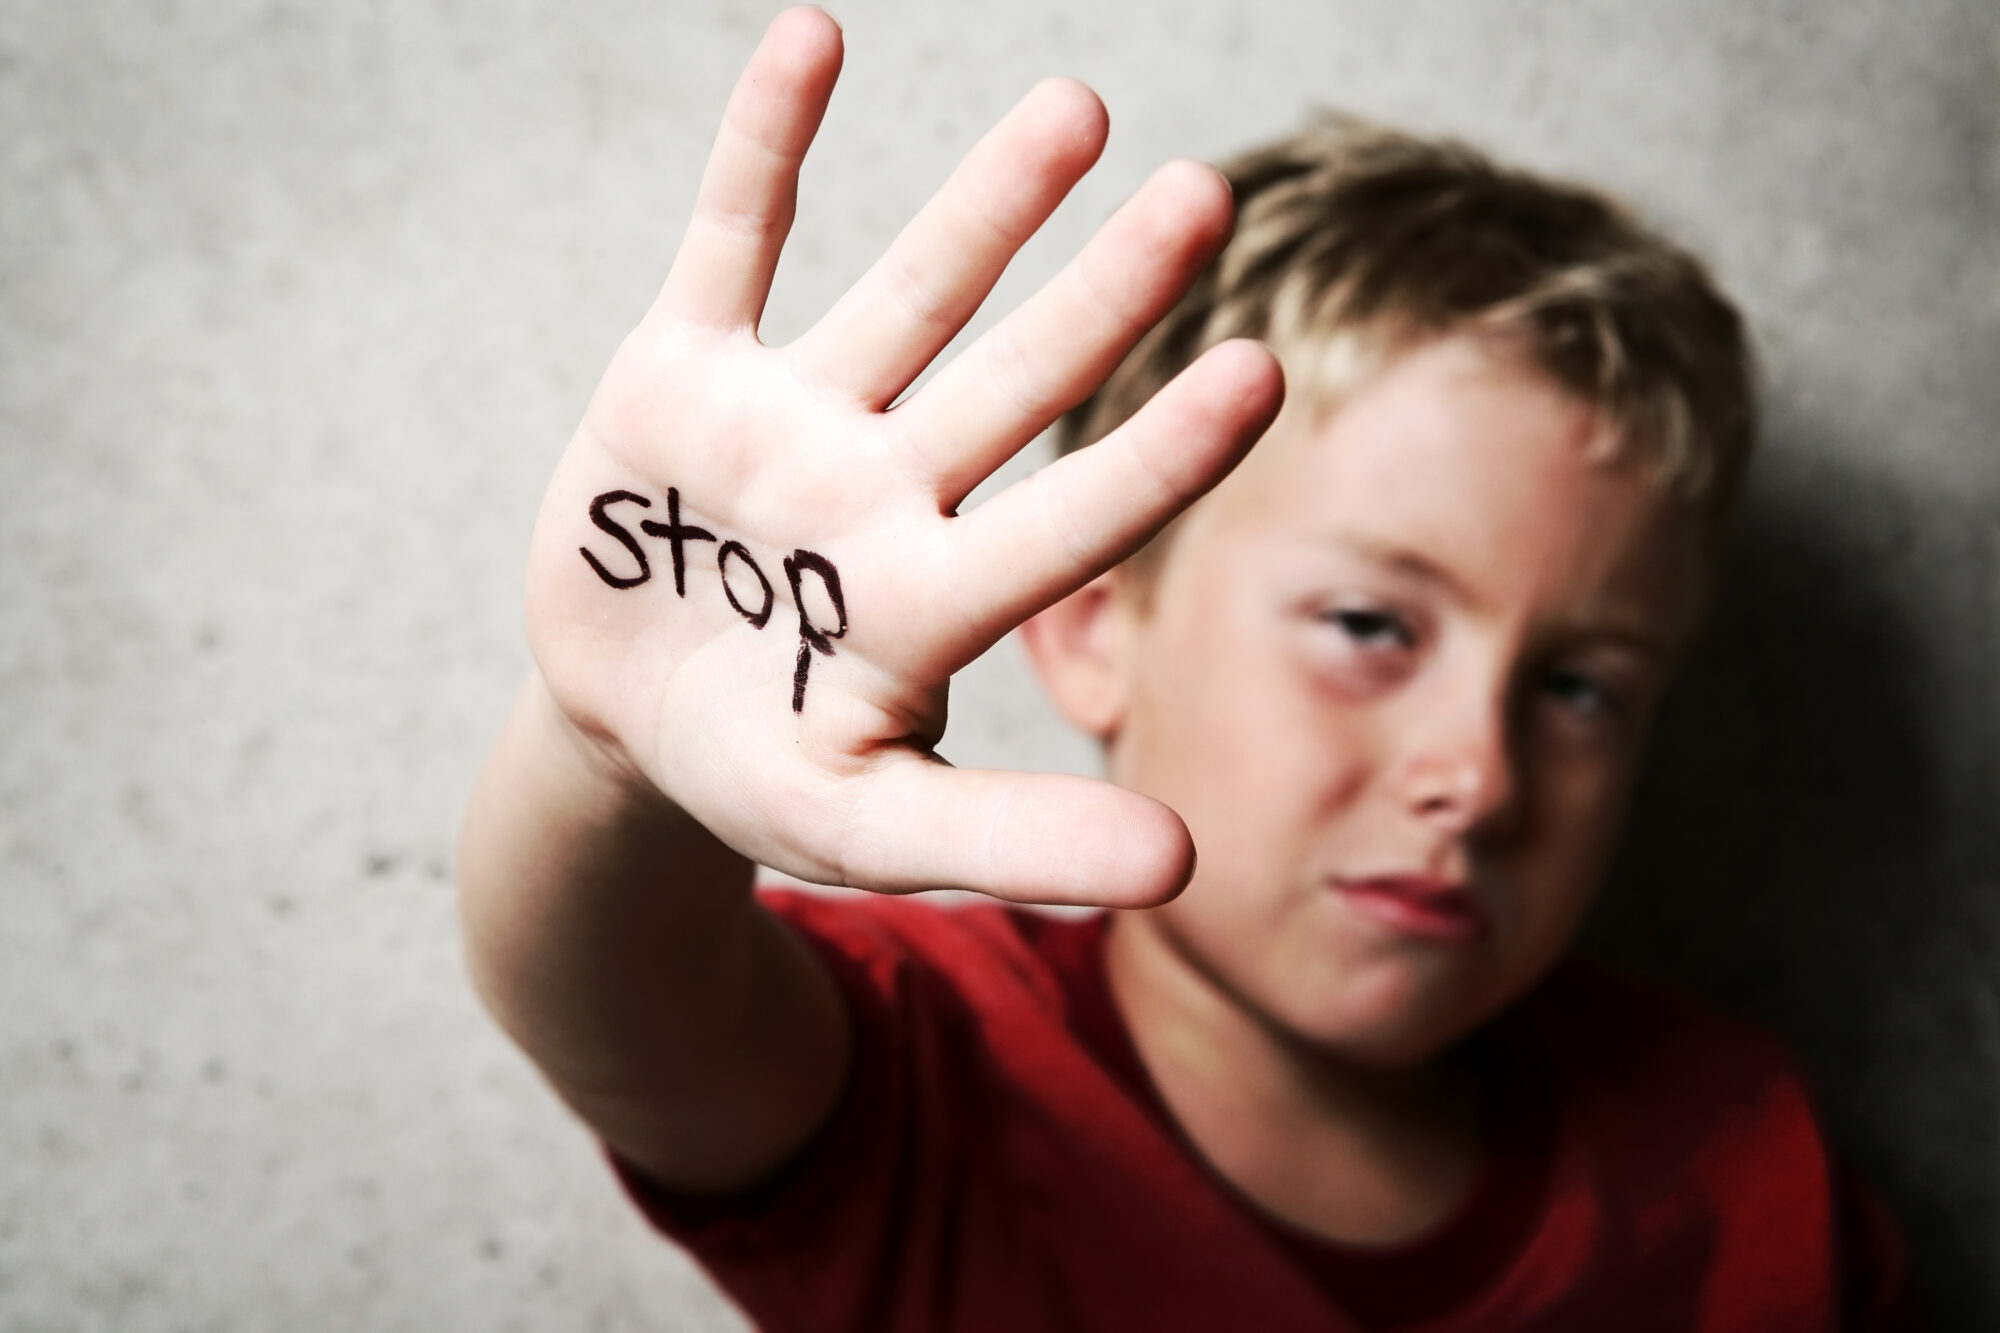 Chatten over huiselijk geweld en kindermishandeling